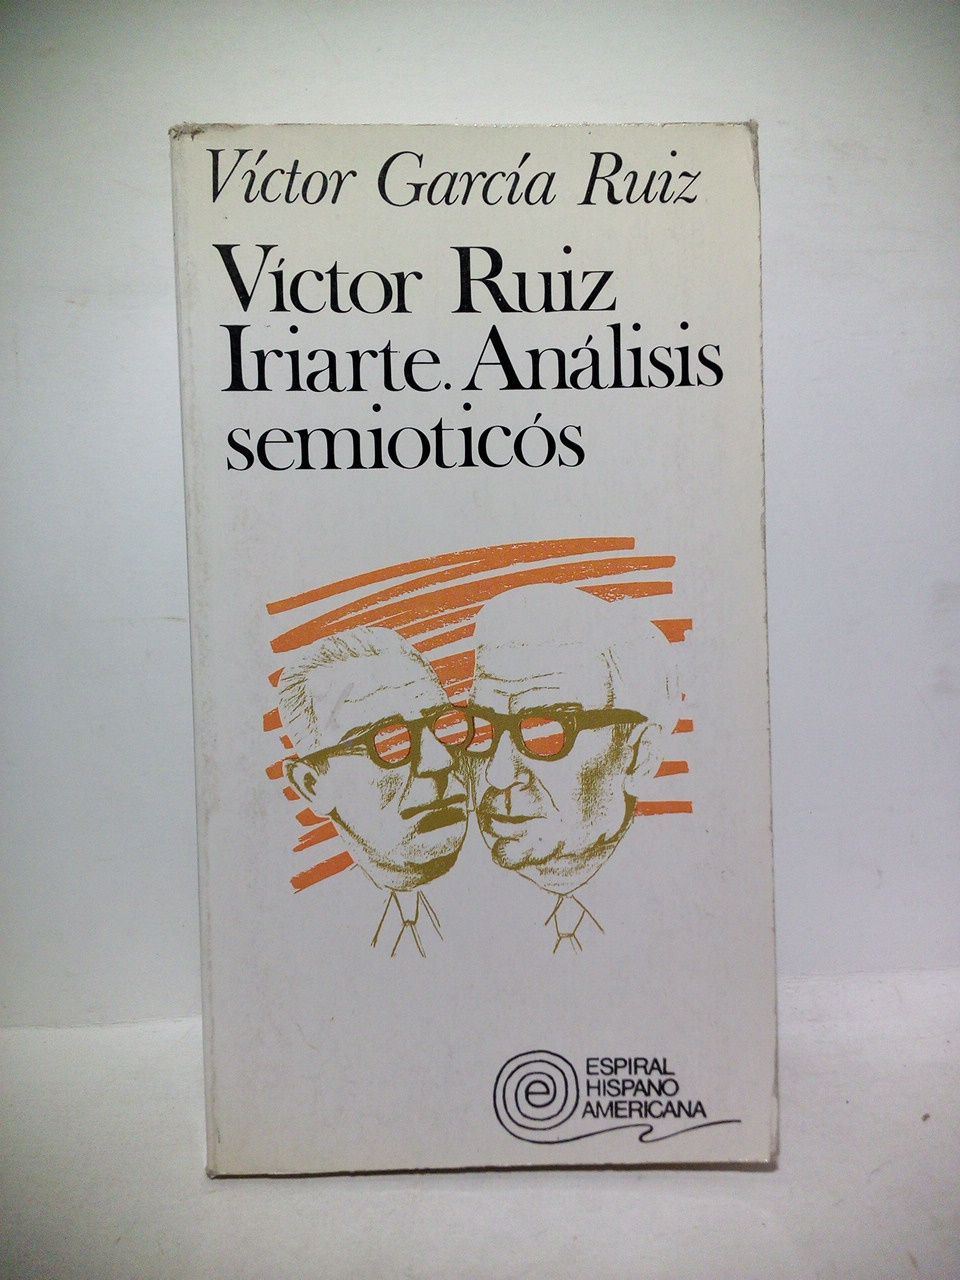 GARCIA RUIZ, Vctor - Vctor Ruiz Iriarte. Anlisis semiticos. (Premio Rivadeneira de la Real Academia Espaola)